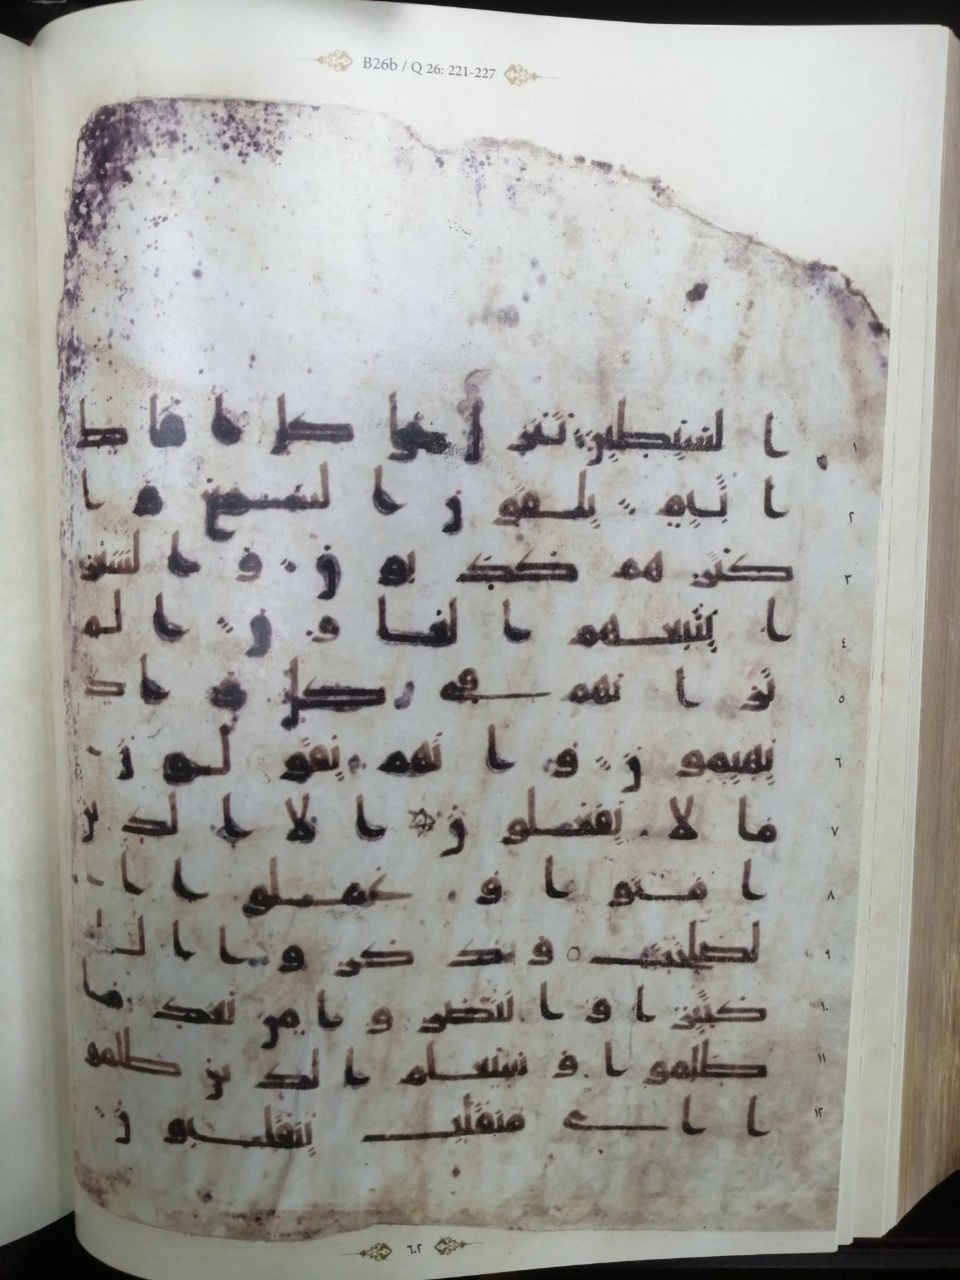 إهداء نسخة مصورة من مخطوط قرآني نادر إلى خزانة العتبة العباسية

